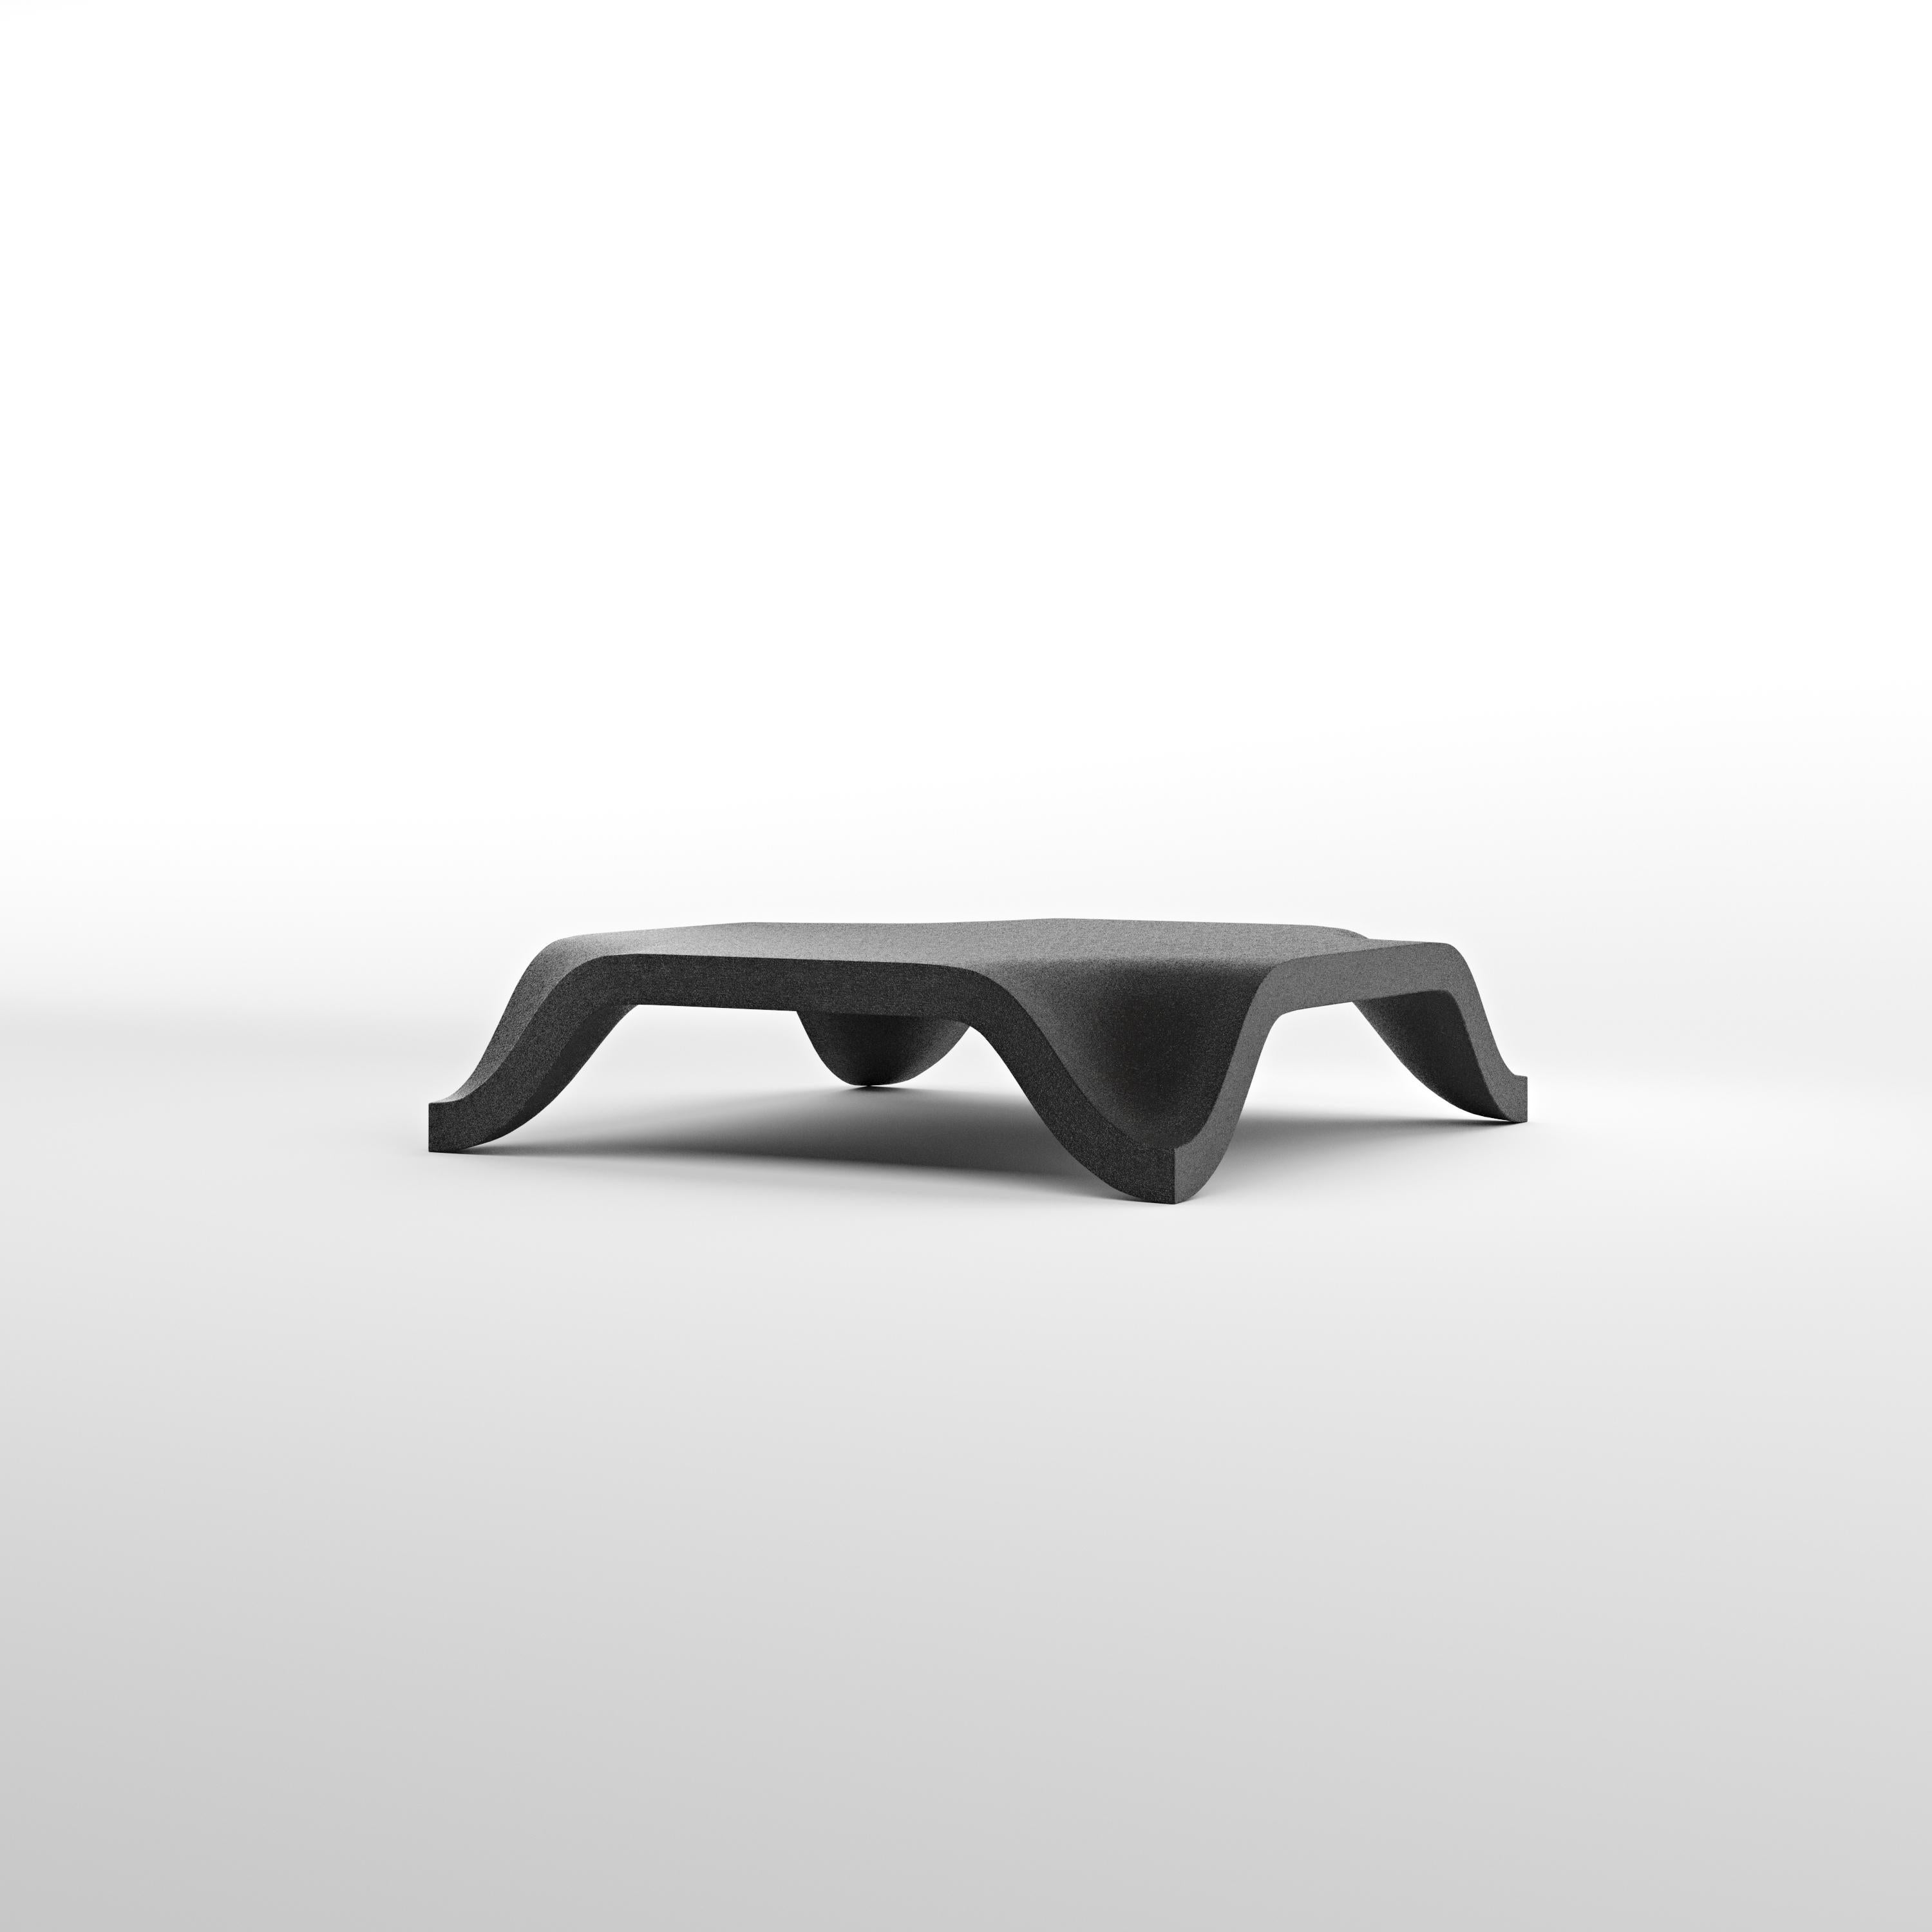 Sur commande
Sable quartzeux de Contourage
Table basse de Johan Wilén

La dernière création marquante du designer suédois : une table console pas comme les autres. Utilisant une technologie d'impression 3D innovante et du sable de quartz,